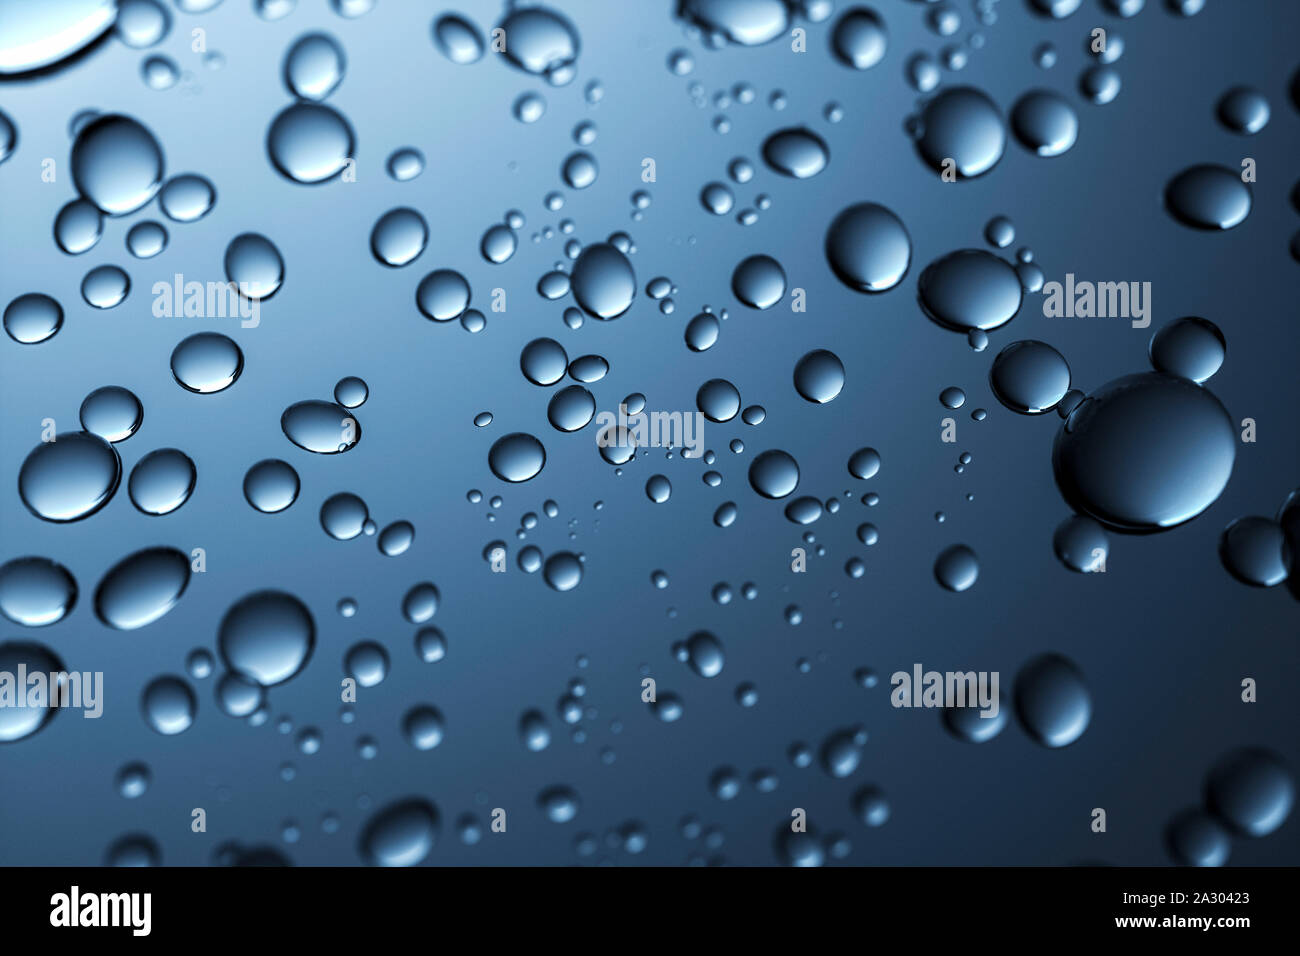 Water Drop Wallpaper Images  Free Download on Freepik